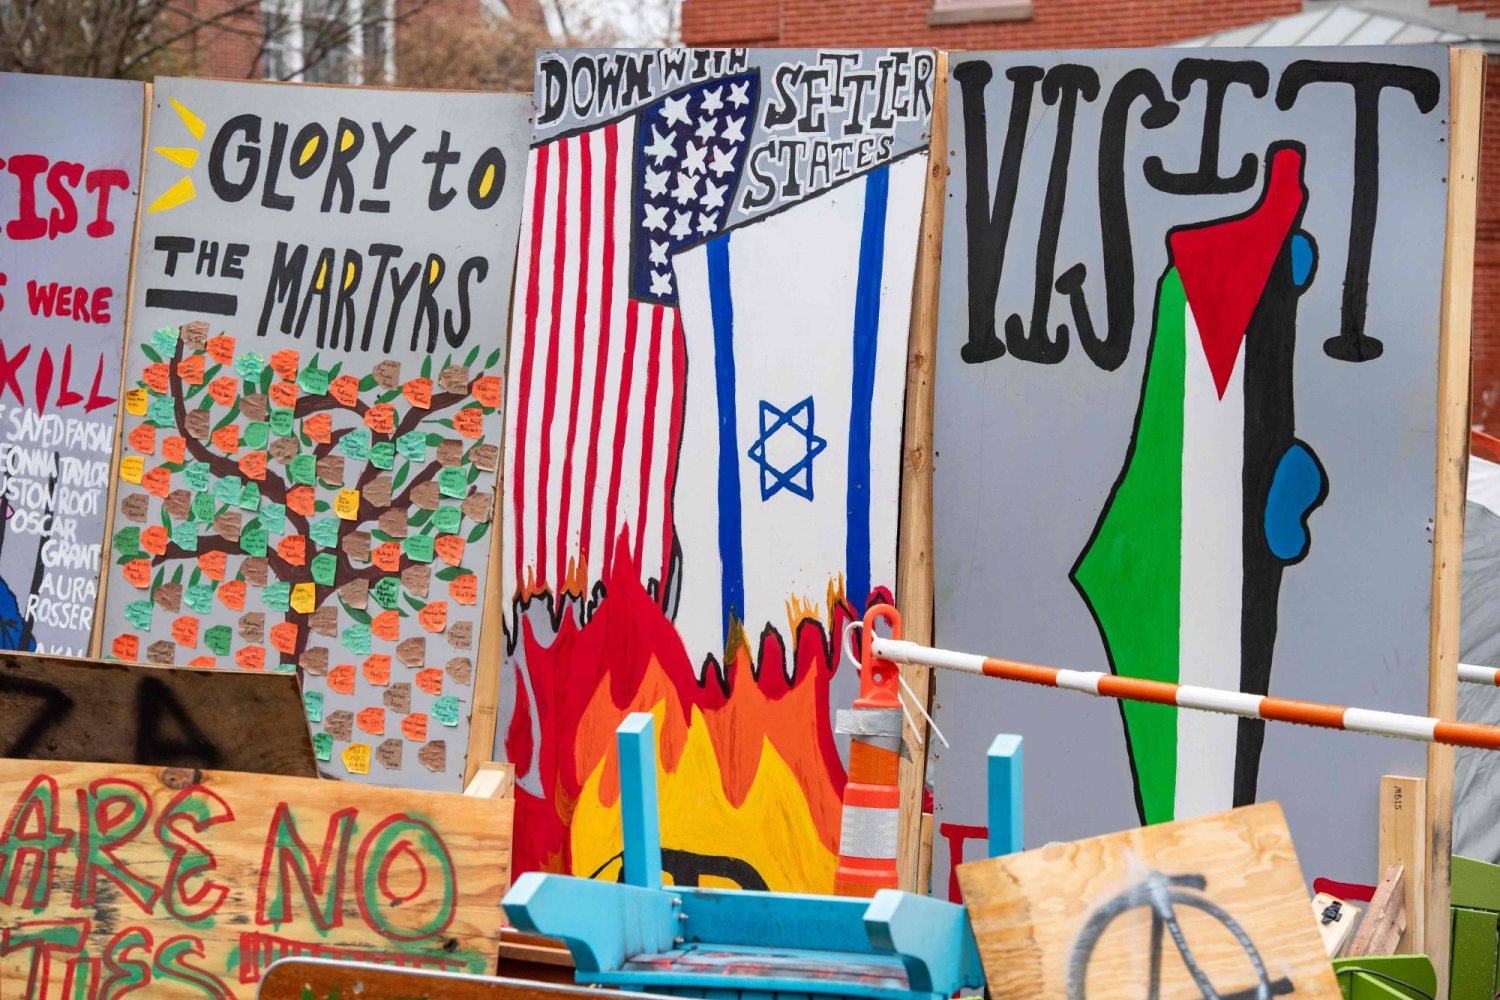 لافتات في مخيم الاحتجاج المؤيد للفلسطينيين في جامعة تافتس في ميدفورد ماساتشوستس (أ.ف.ب)